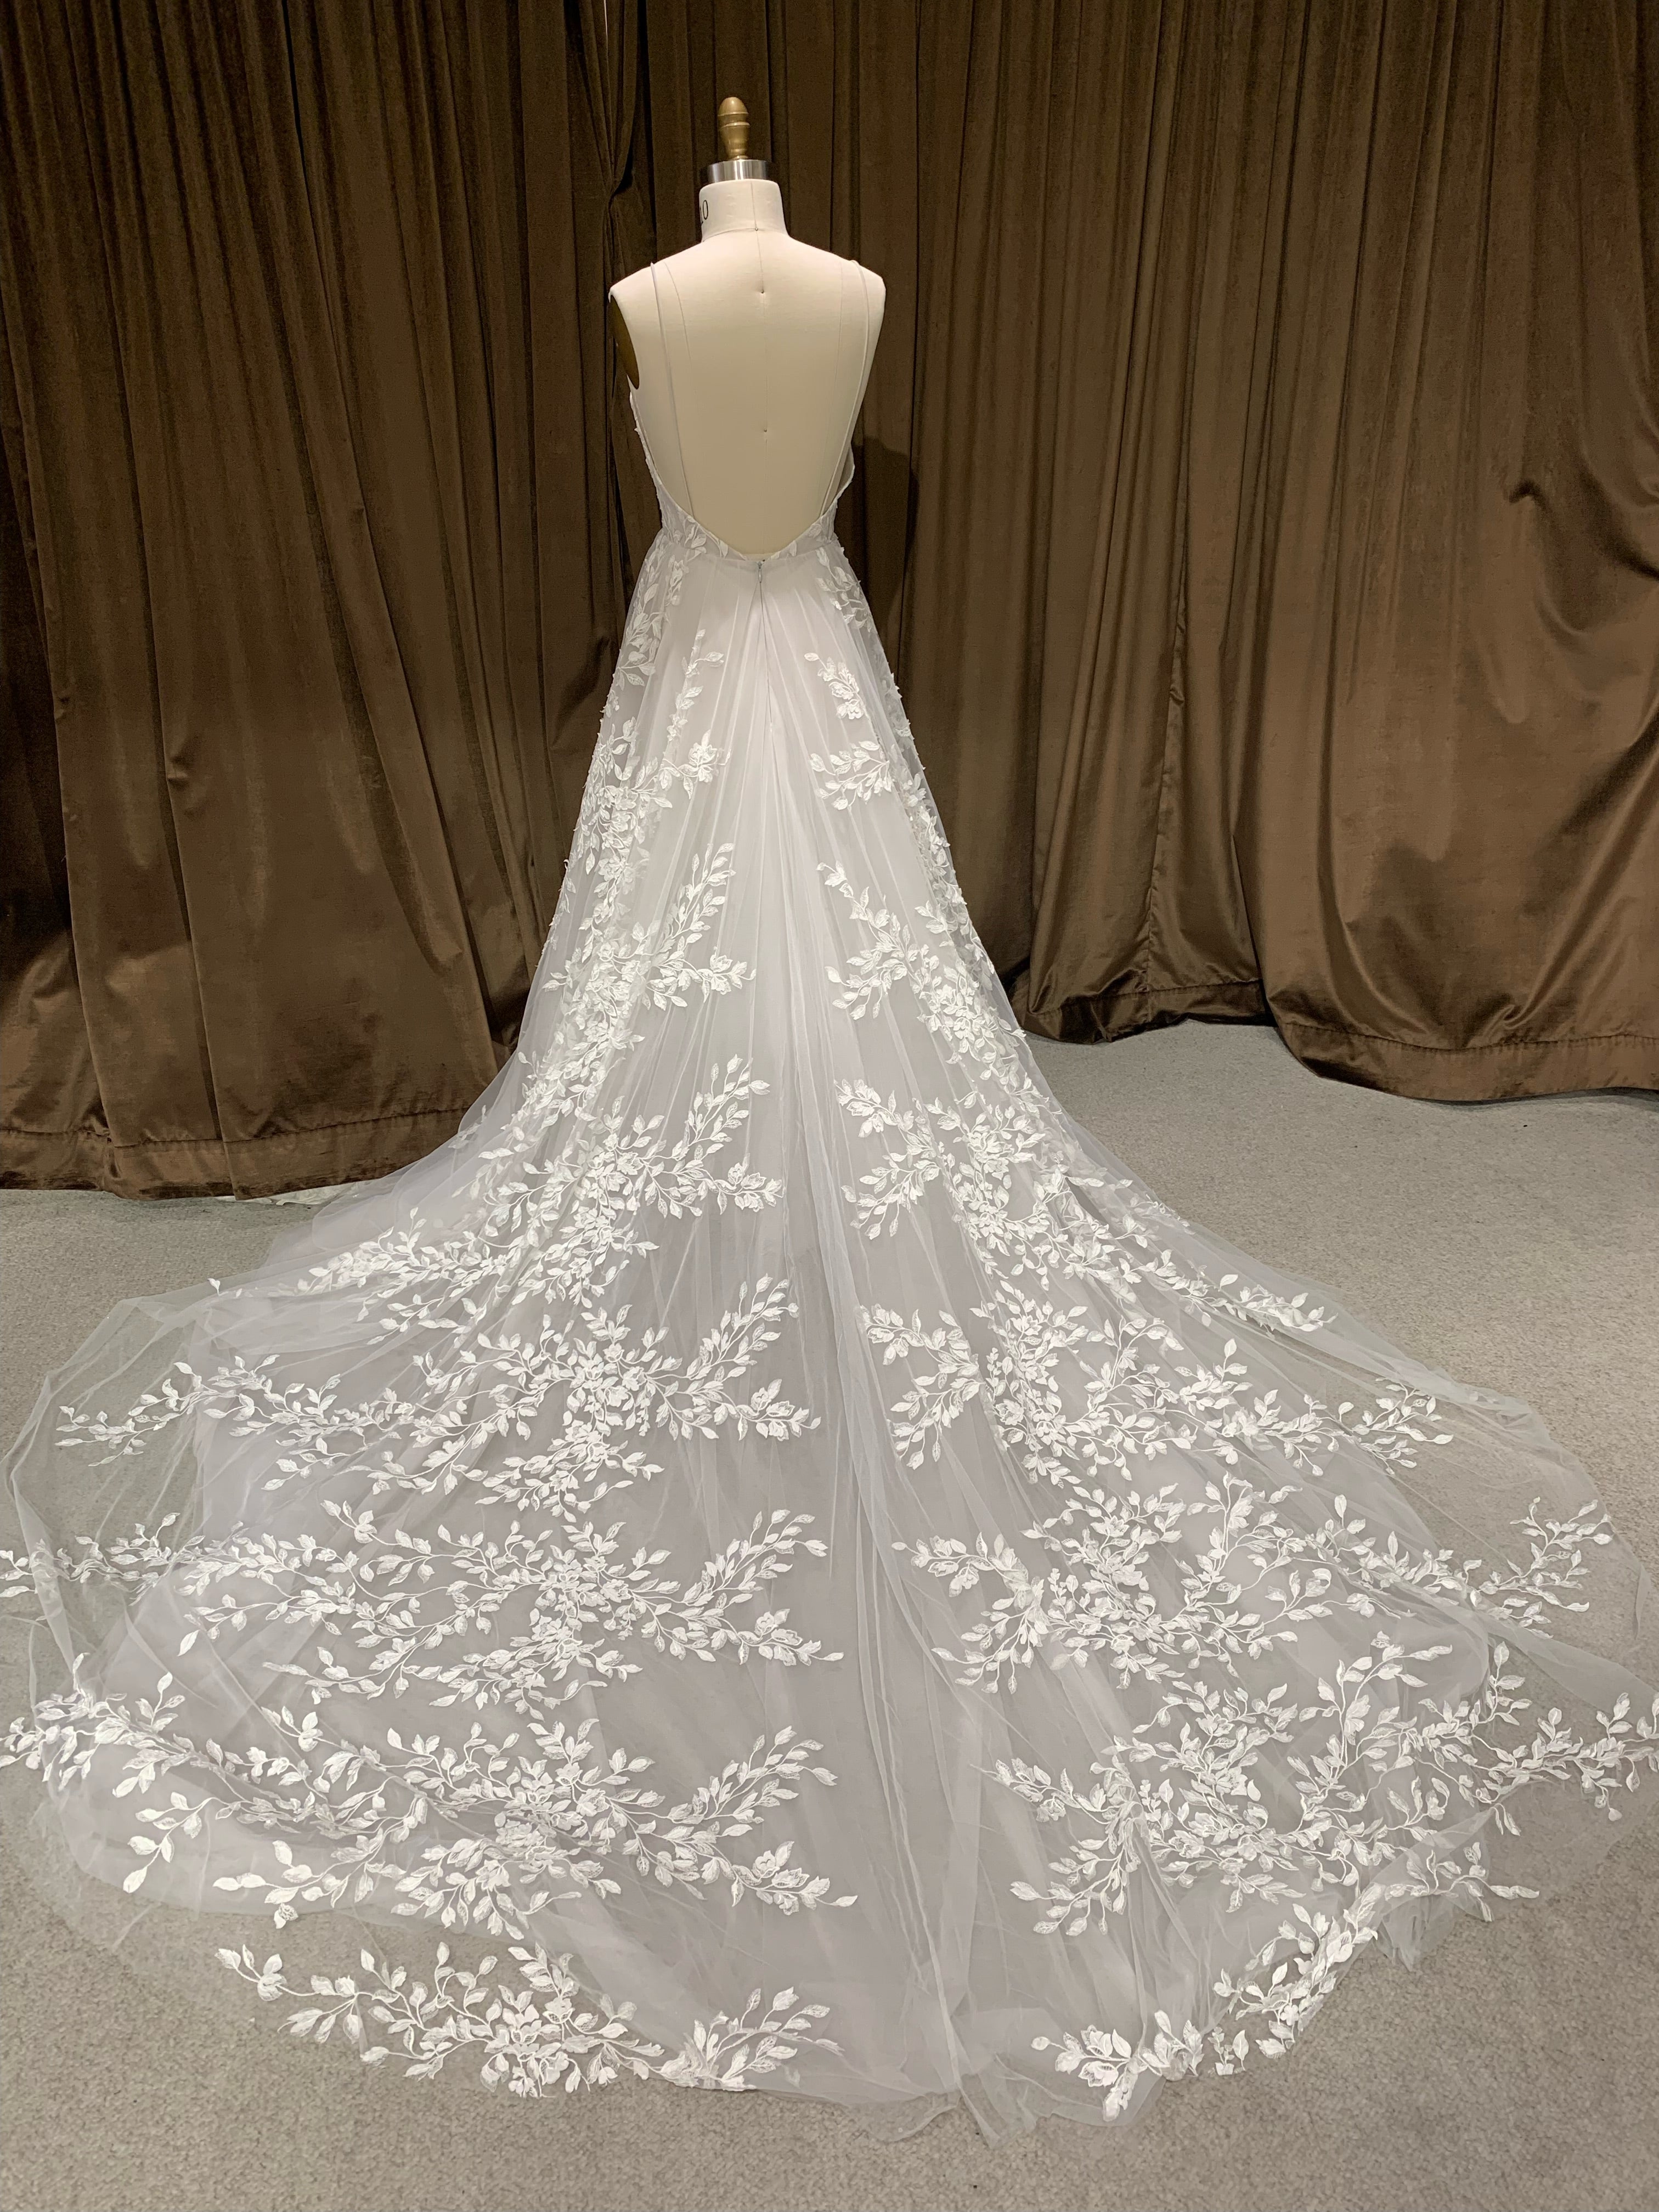 GC#34050 - Vagabond Wilde Wedding Dress in Size 12